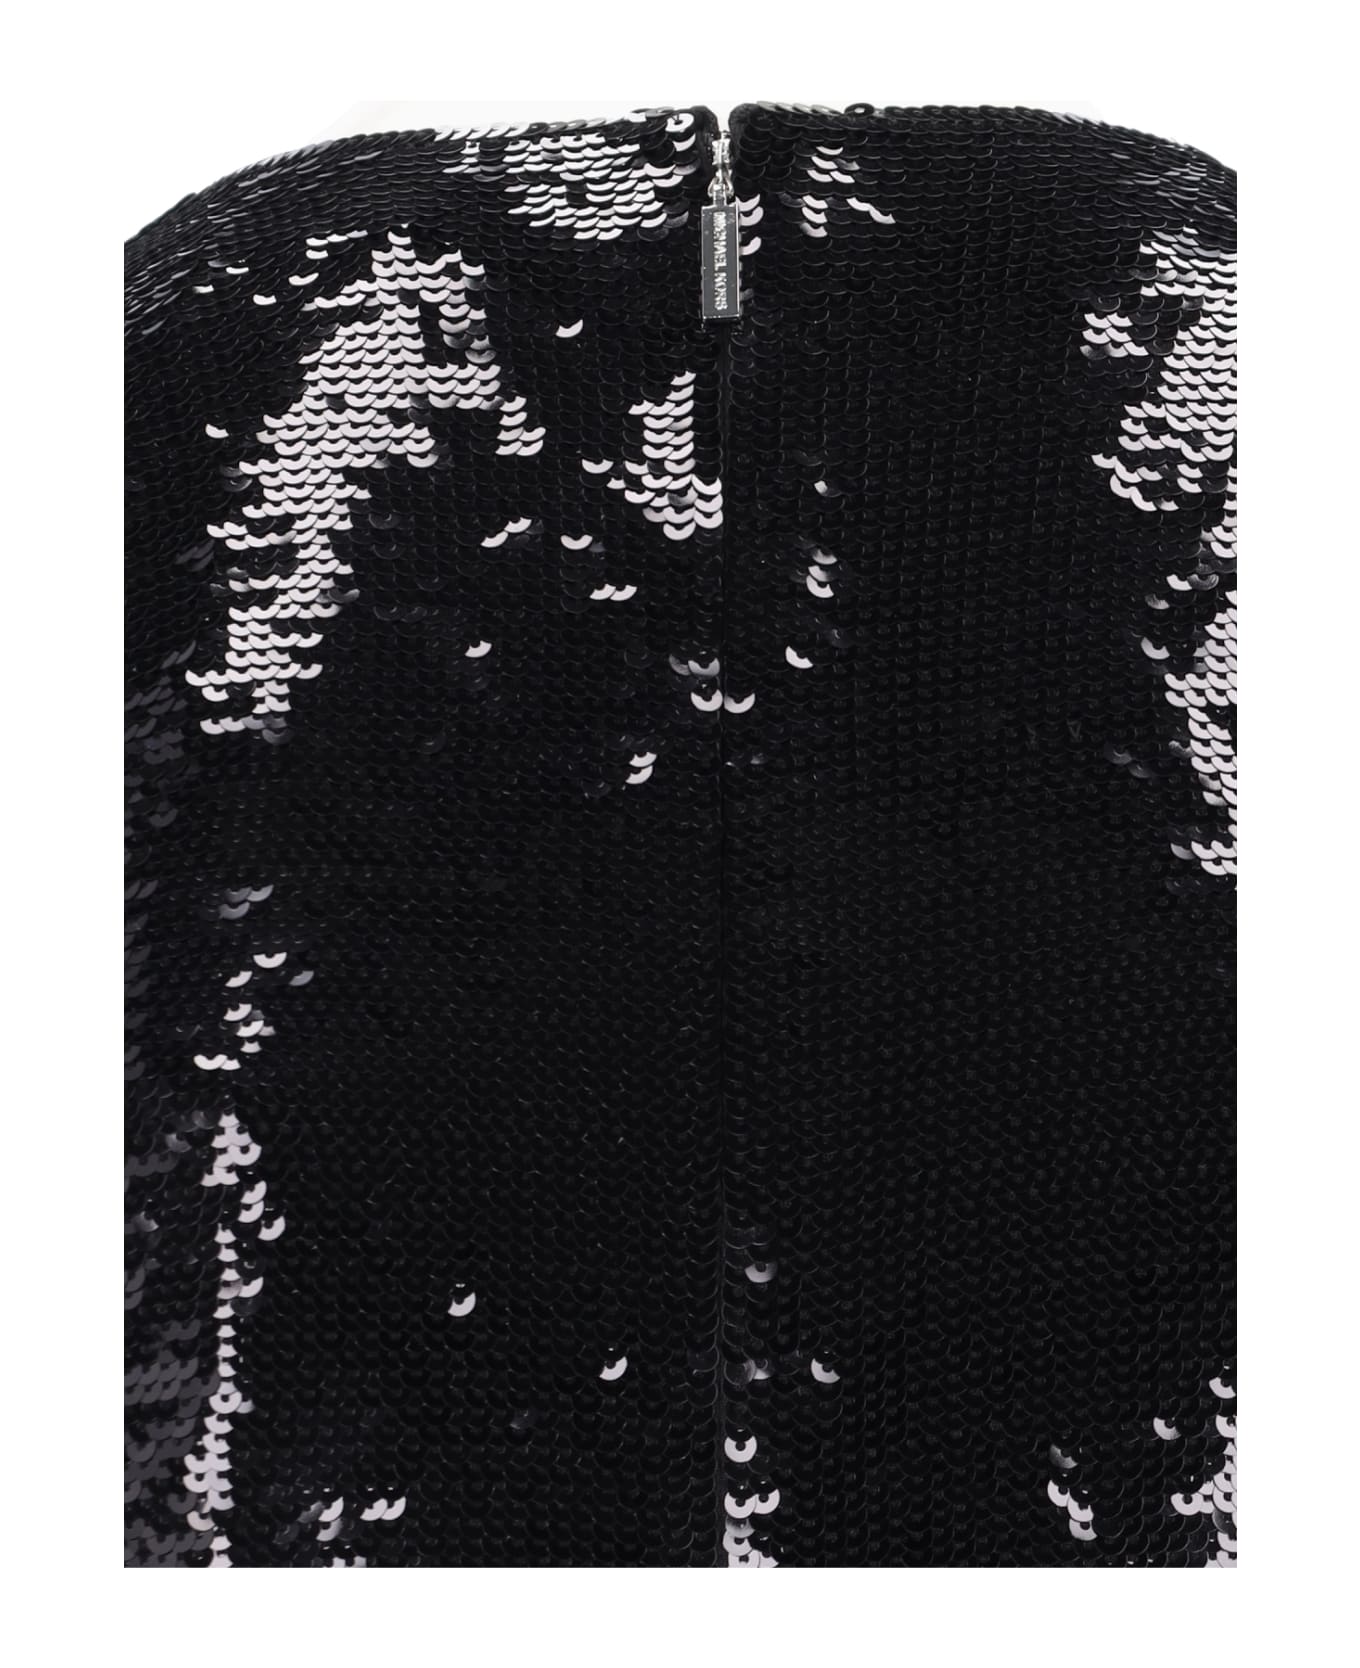 Michael Kors Sequin Mini Dress - Black ニットウェア